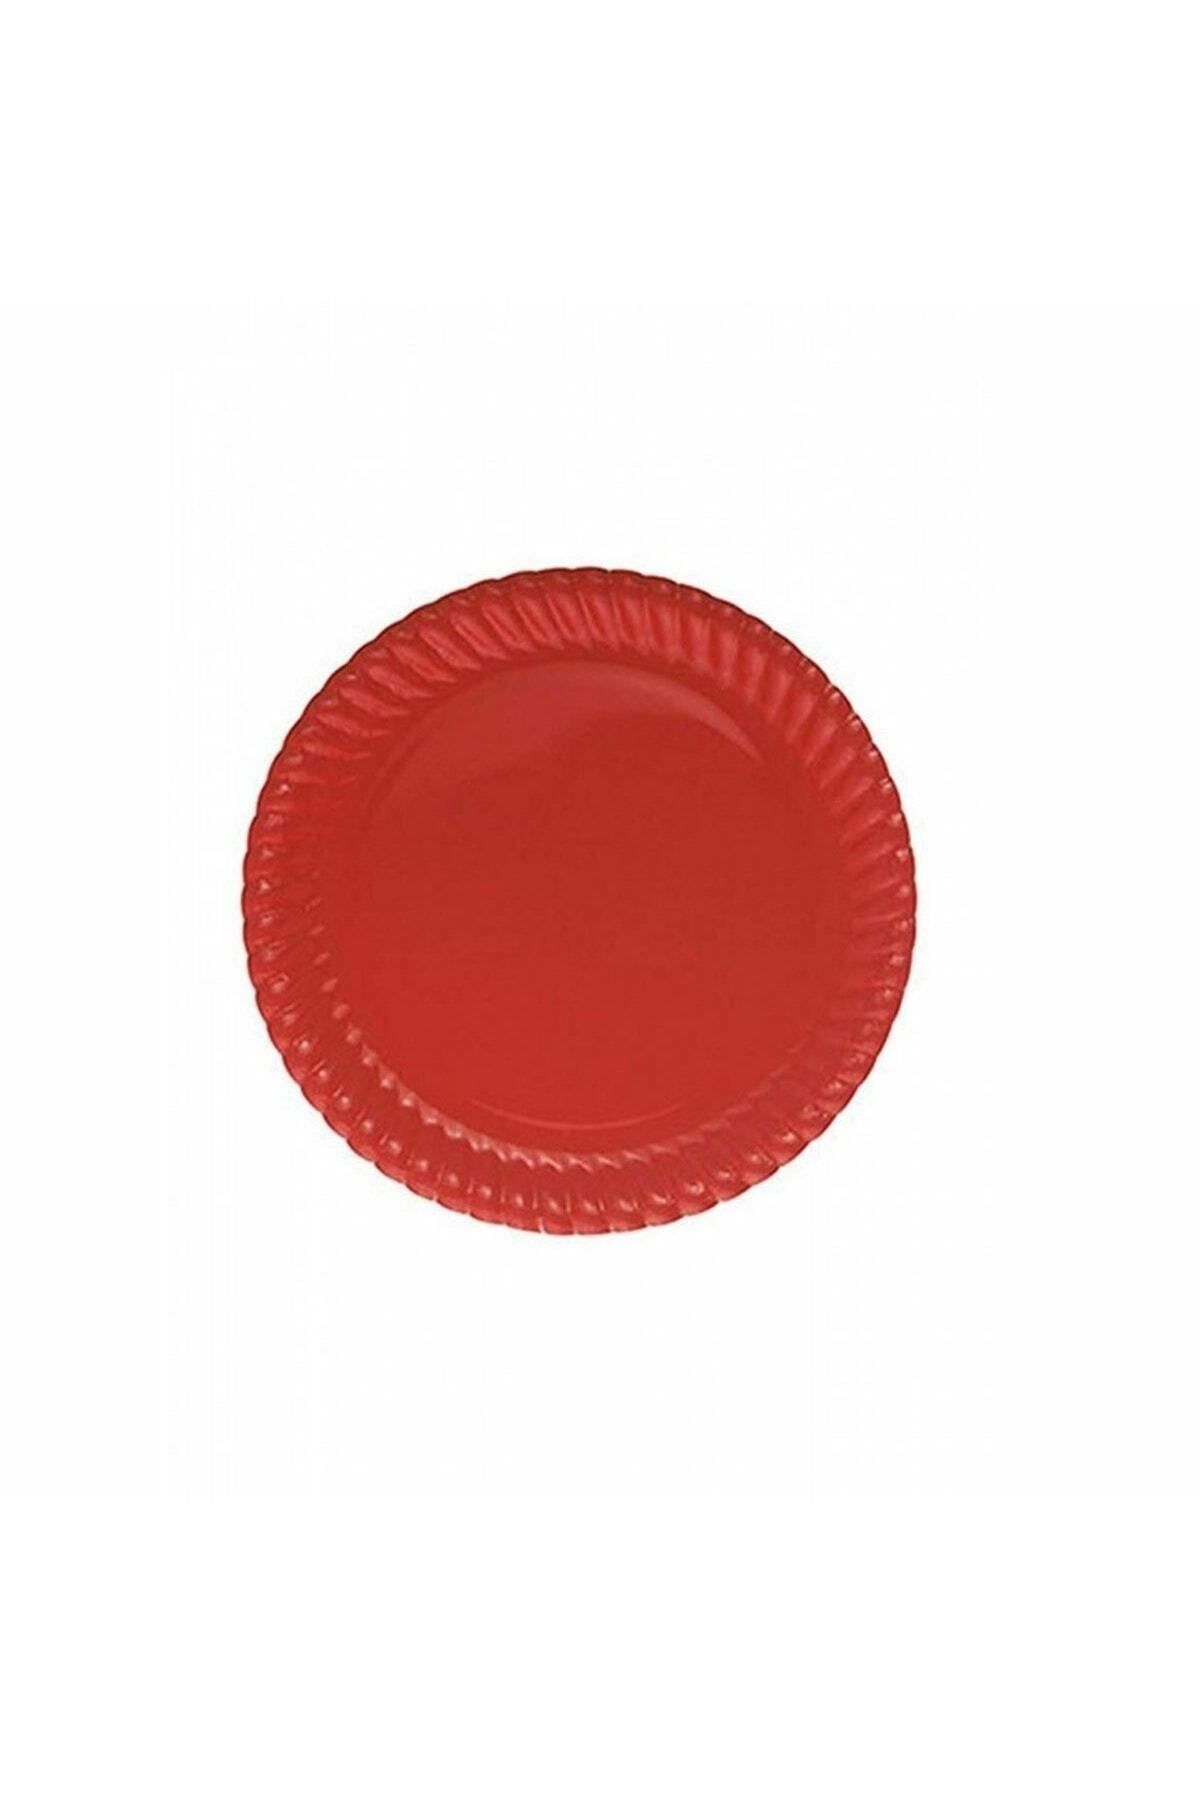 DEDE Tpl5749 Kırmızı Pastel, 8 Adet Tabak 23 cm